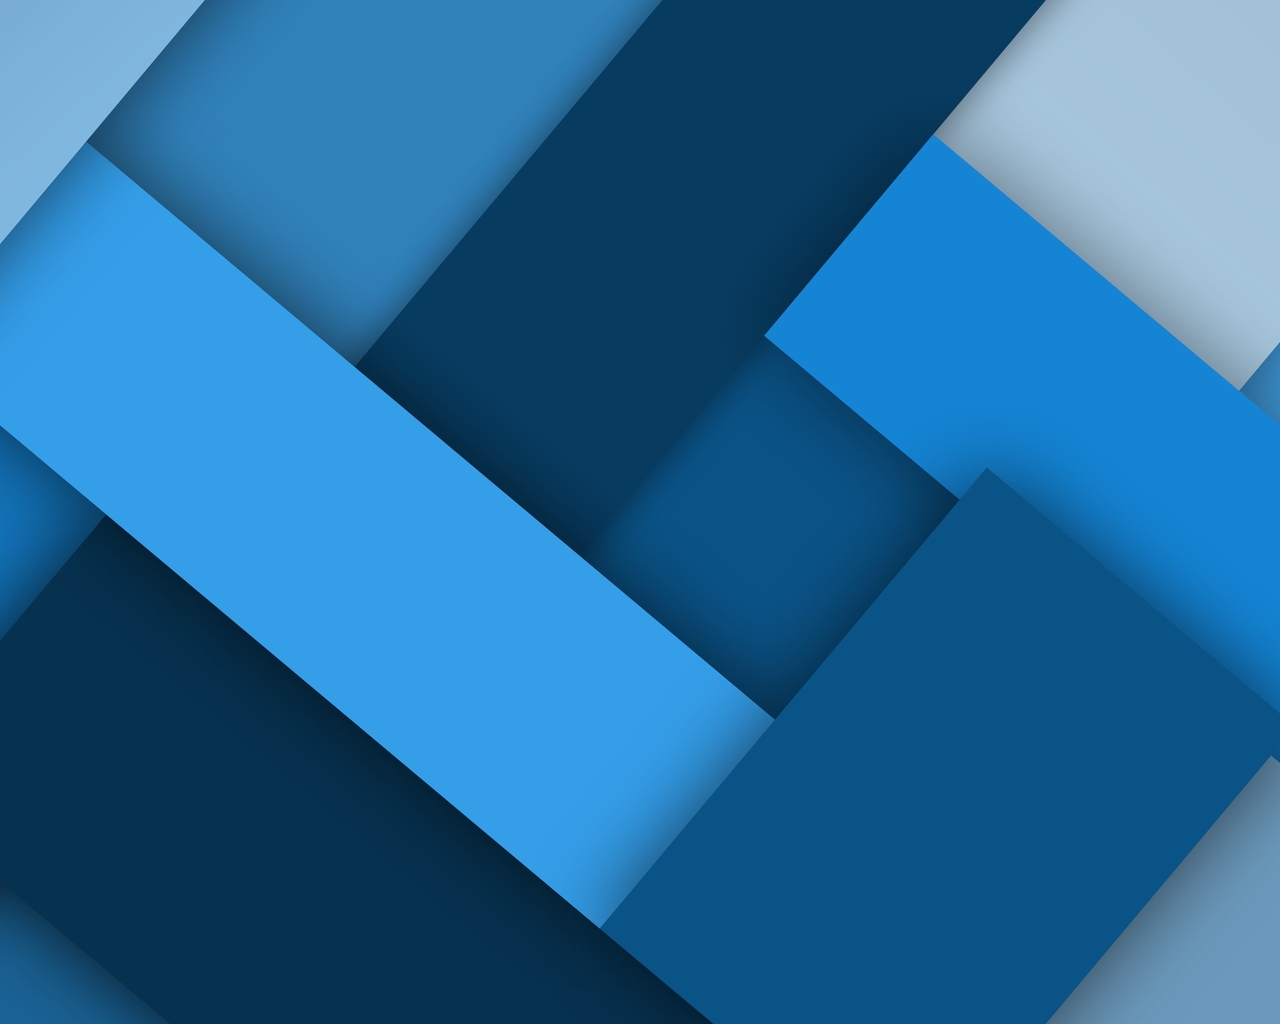 Картинка: Прямоугольники, синий, оттенки, слои